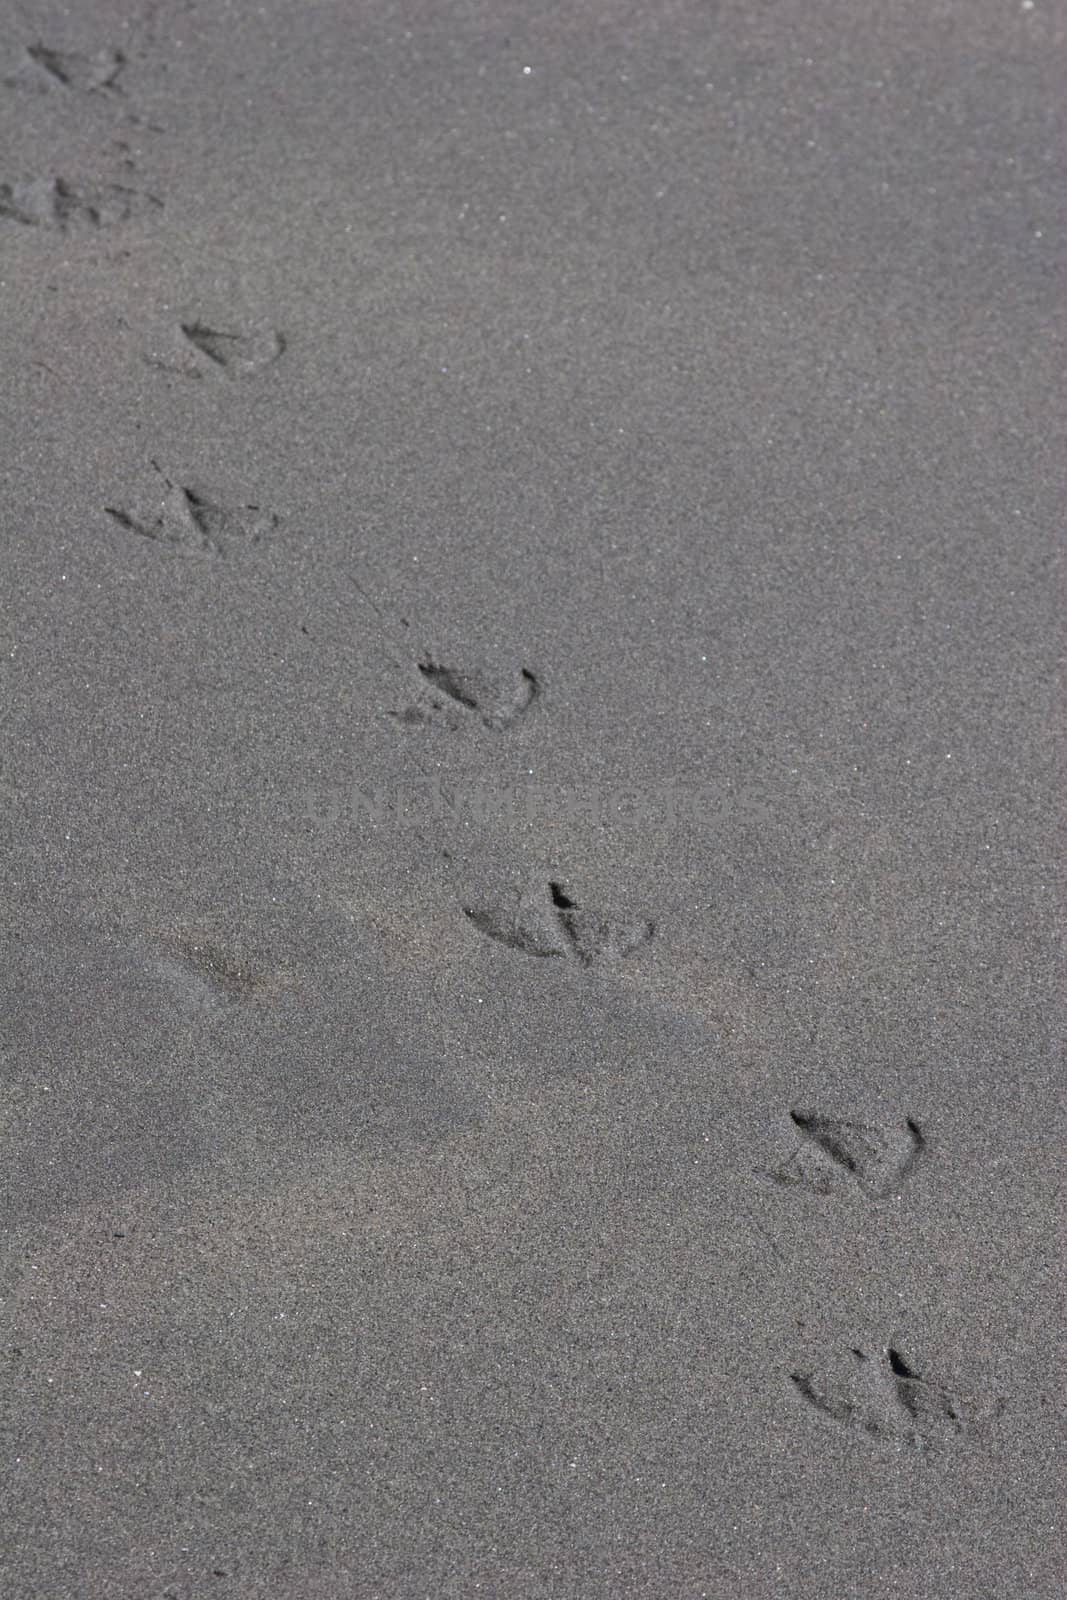 Bird footprints in Sand by kwick52